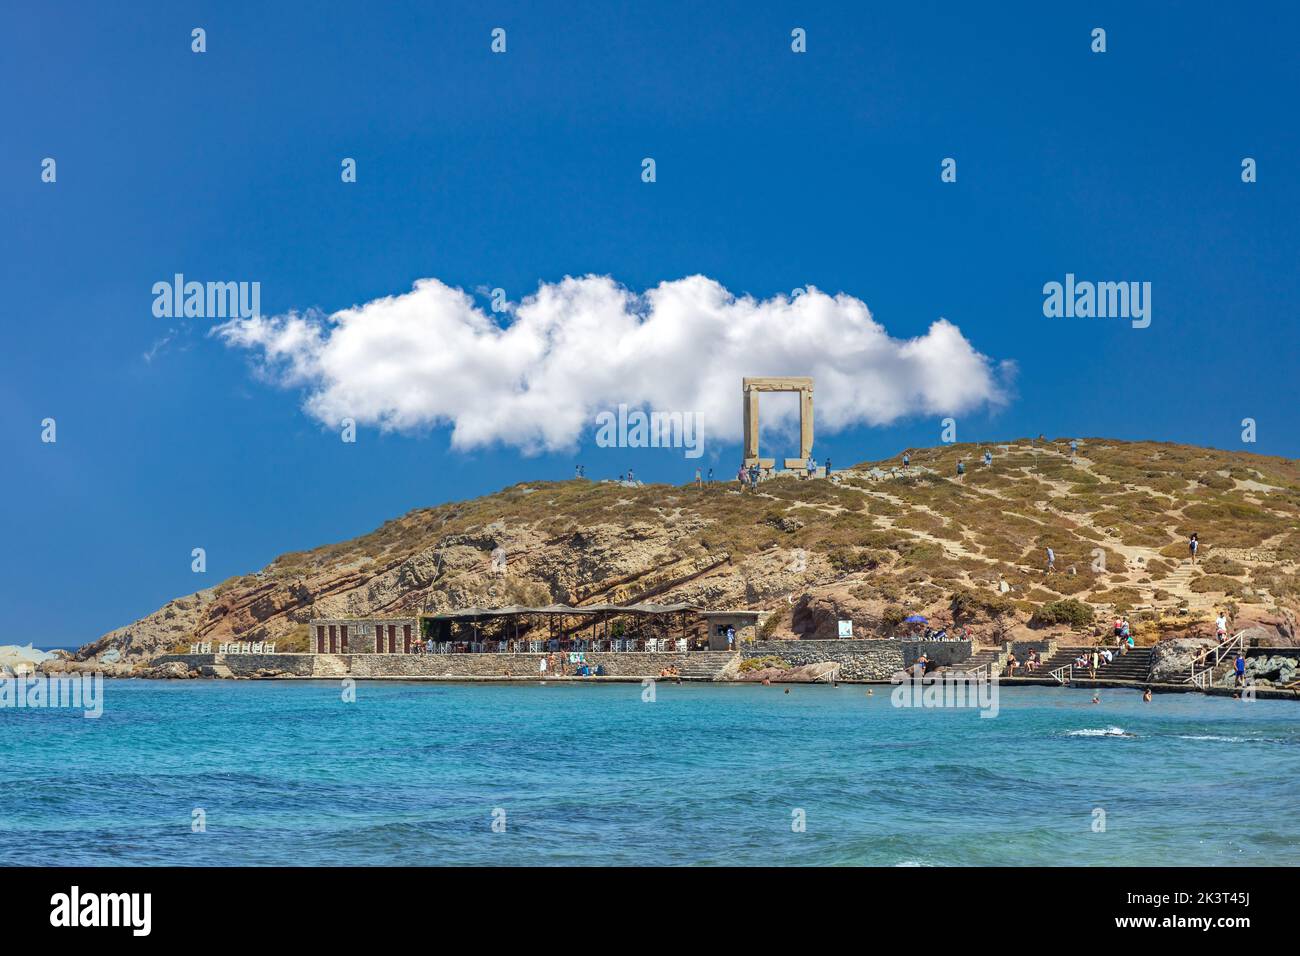 Île de Naxos, Cyclades Grèce. Touristes au Temple d'Apollon, café en bord de mer de l'îlot de Palatia au port. Destination estivale. Banque D'Images